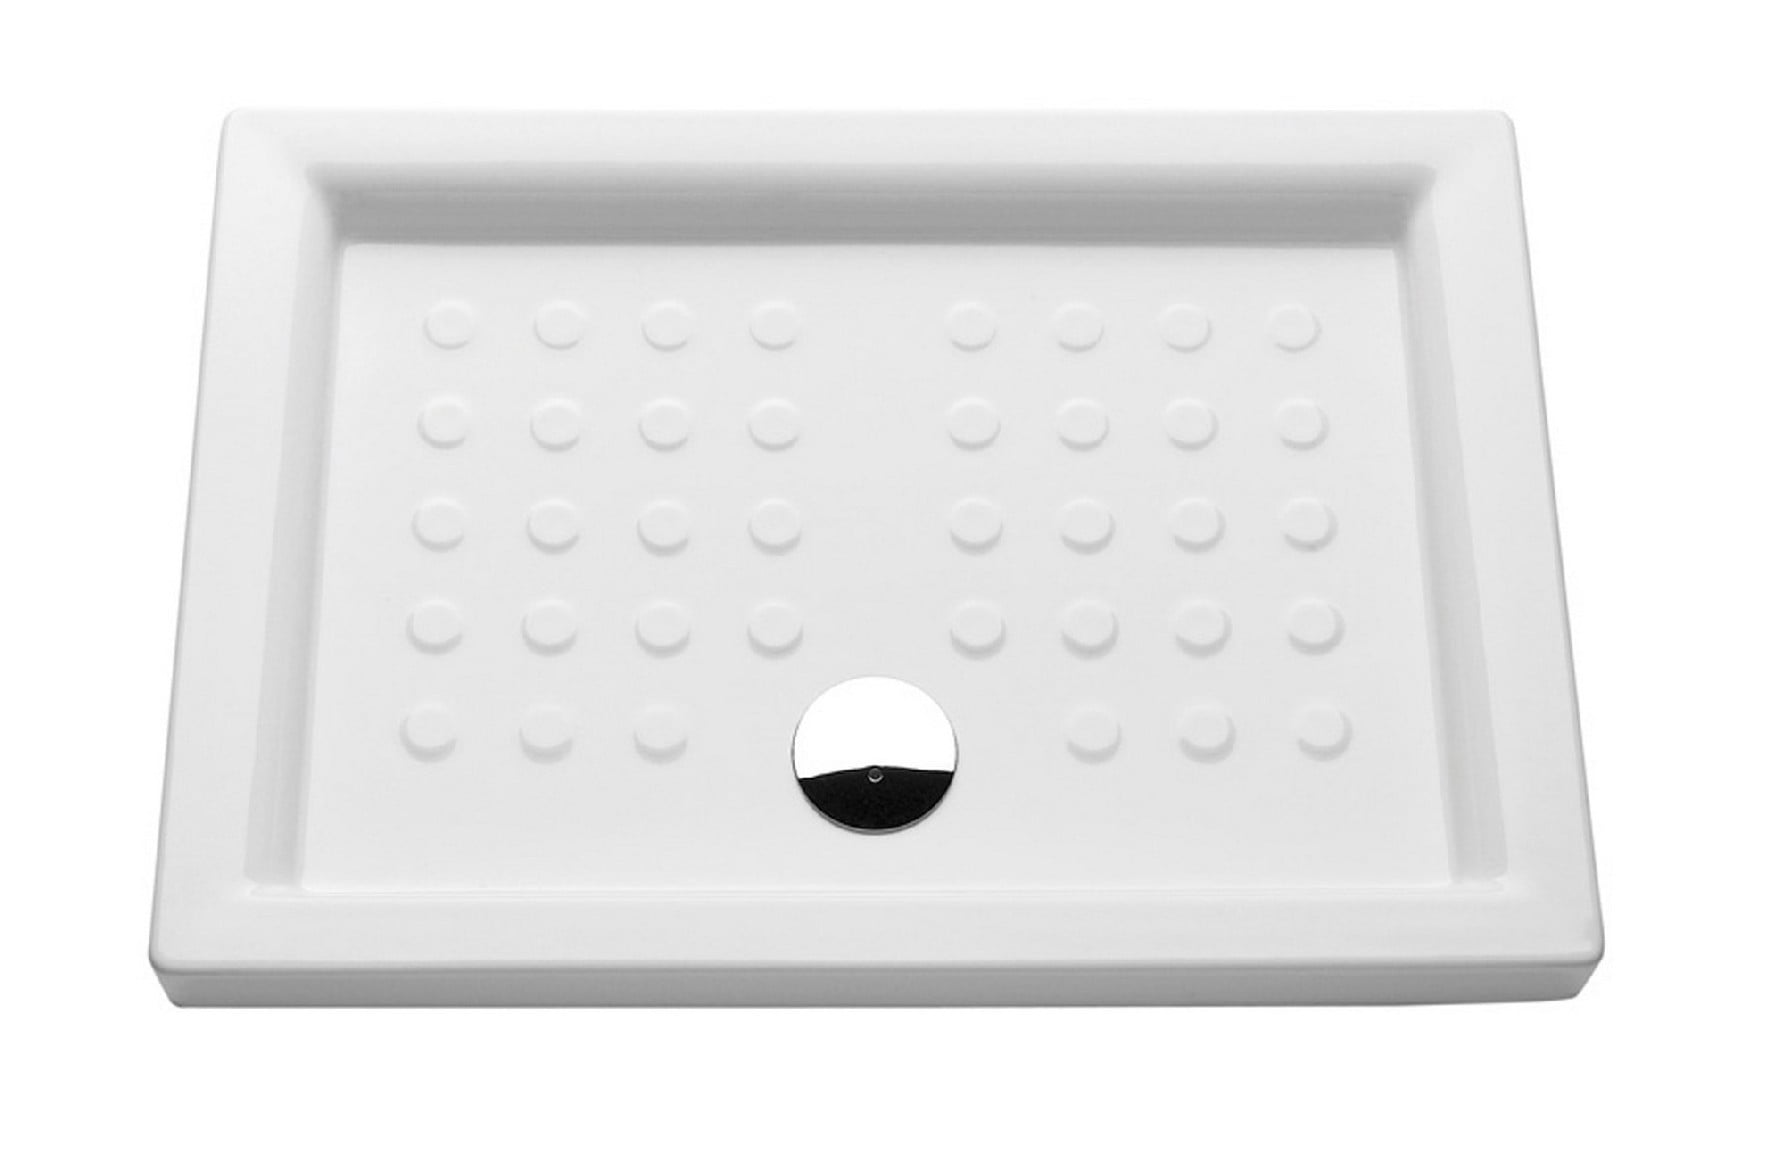 Plato de ducha de 120x80 blanco modelo Pádua Valadares